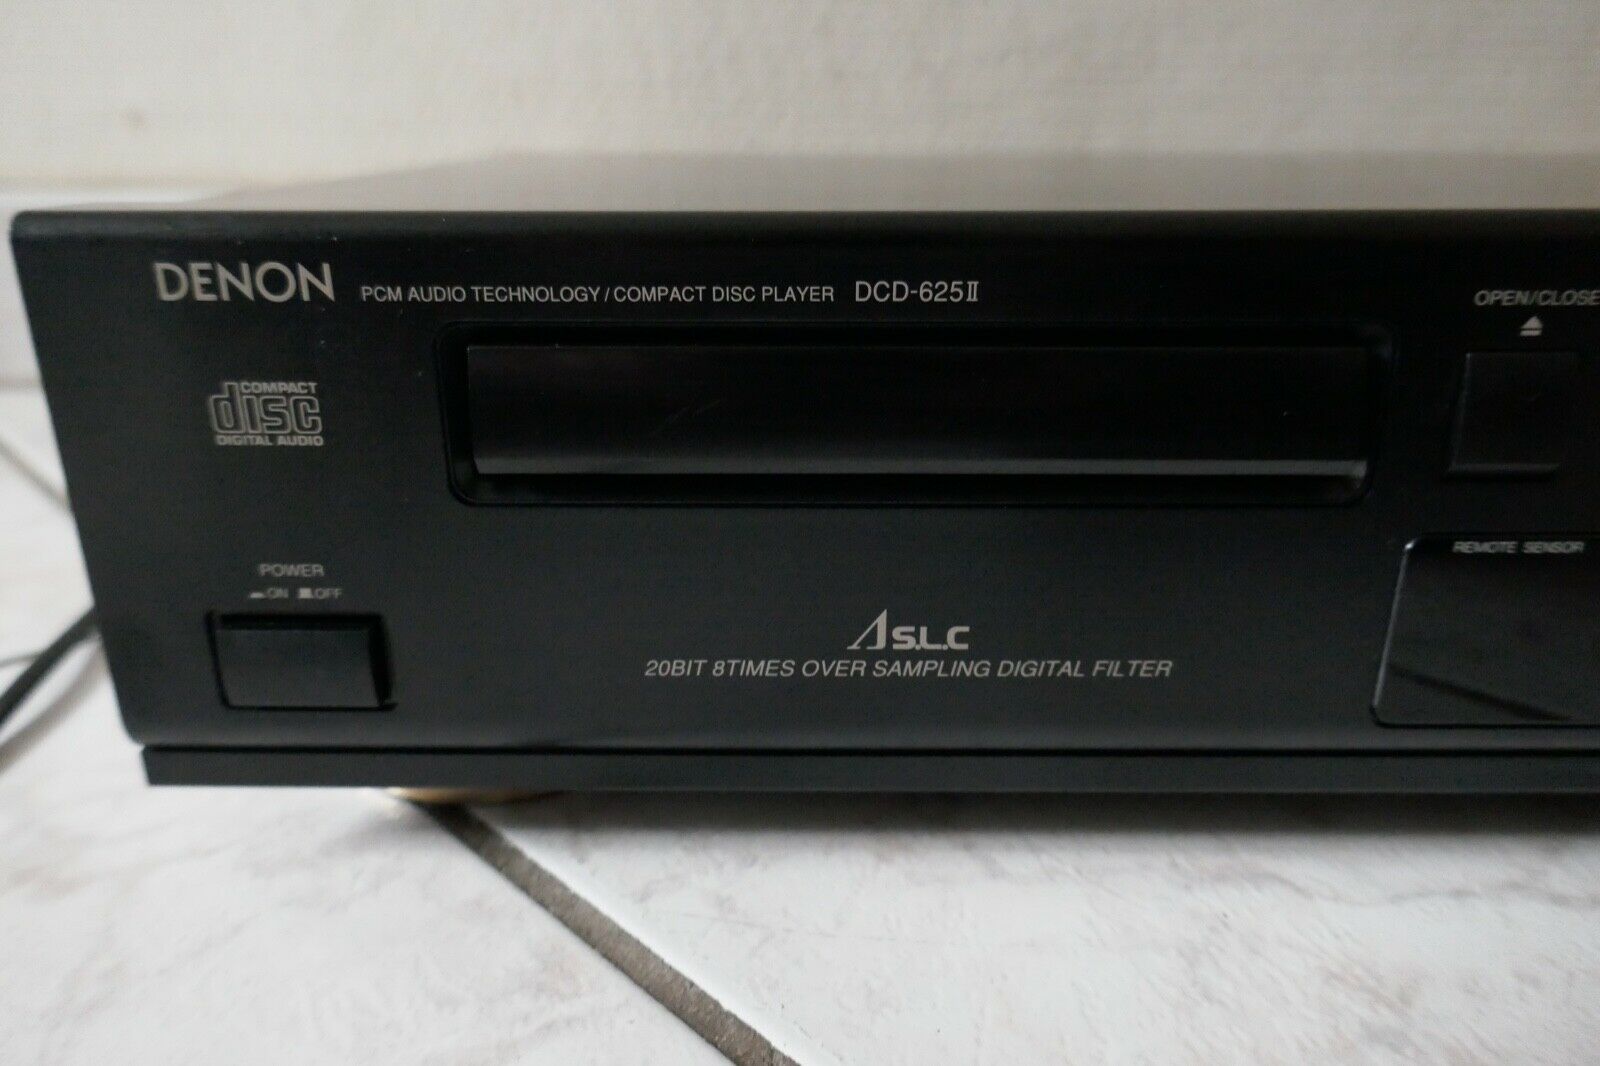 lecteur compact disc cd player denon DCD-625 II vintage occasion